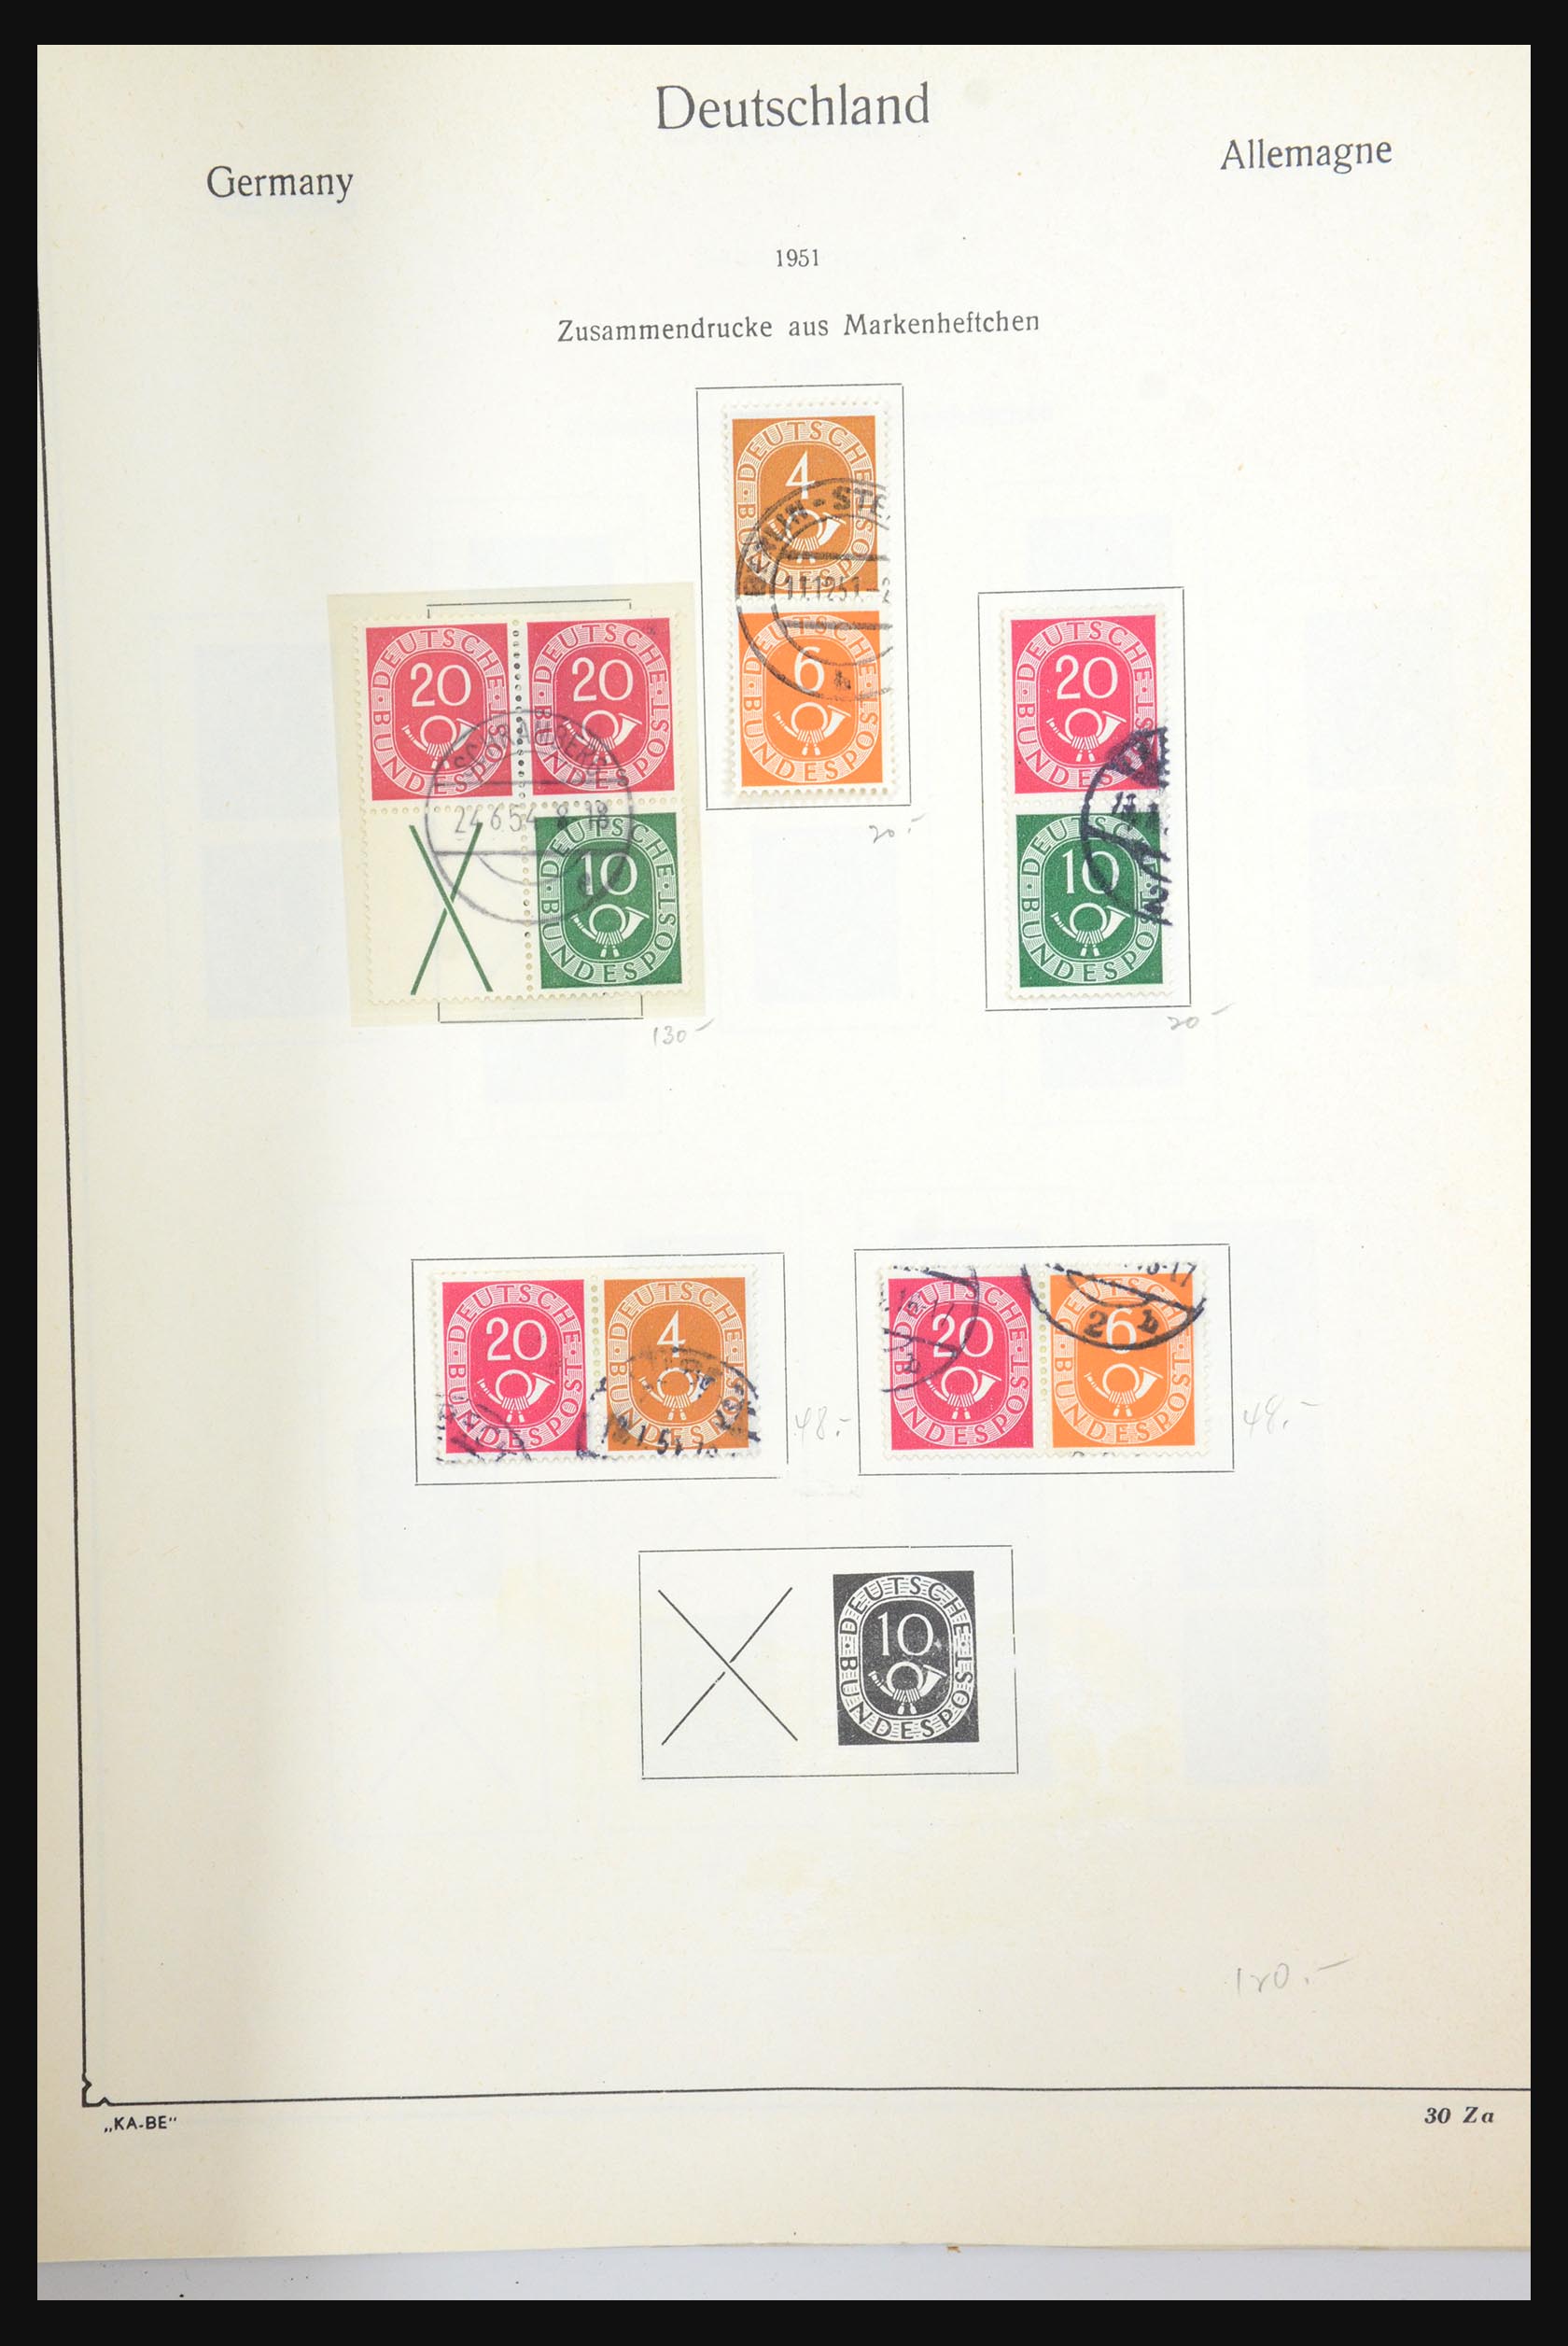 31566 066 - 31566 Duitsland combinaties 1909-1960.